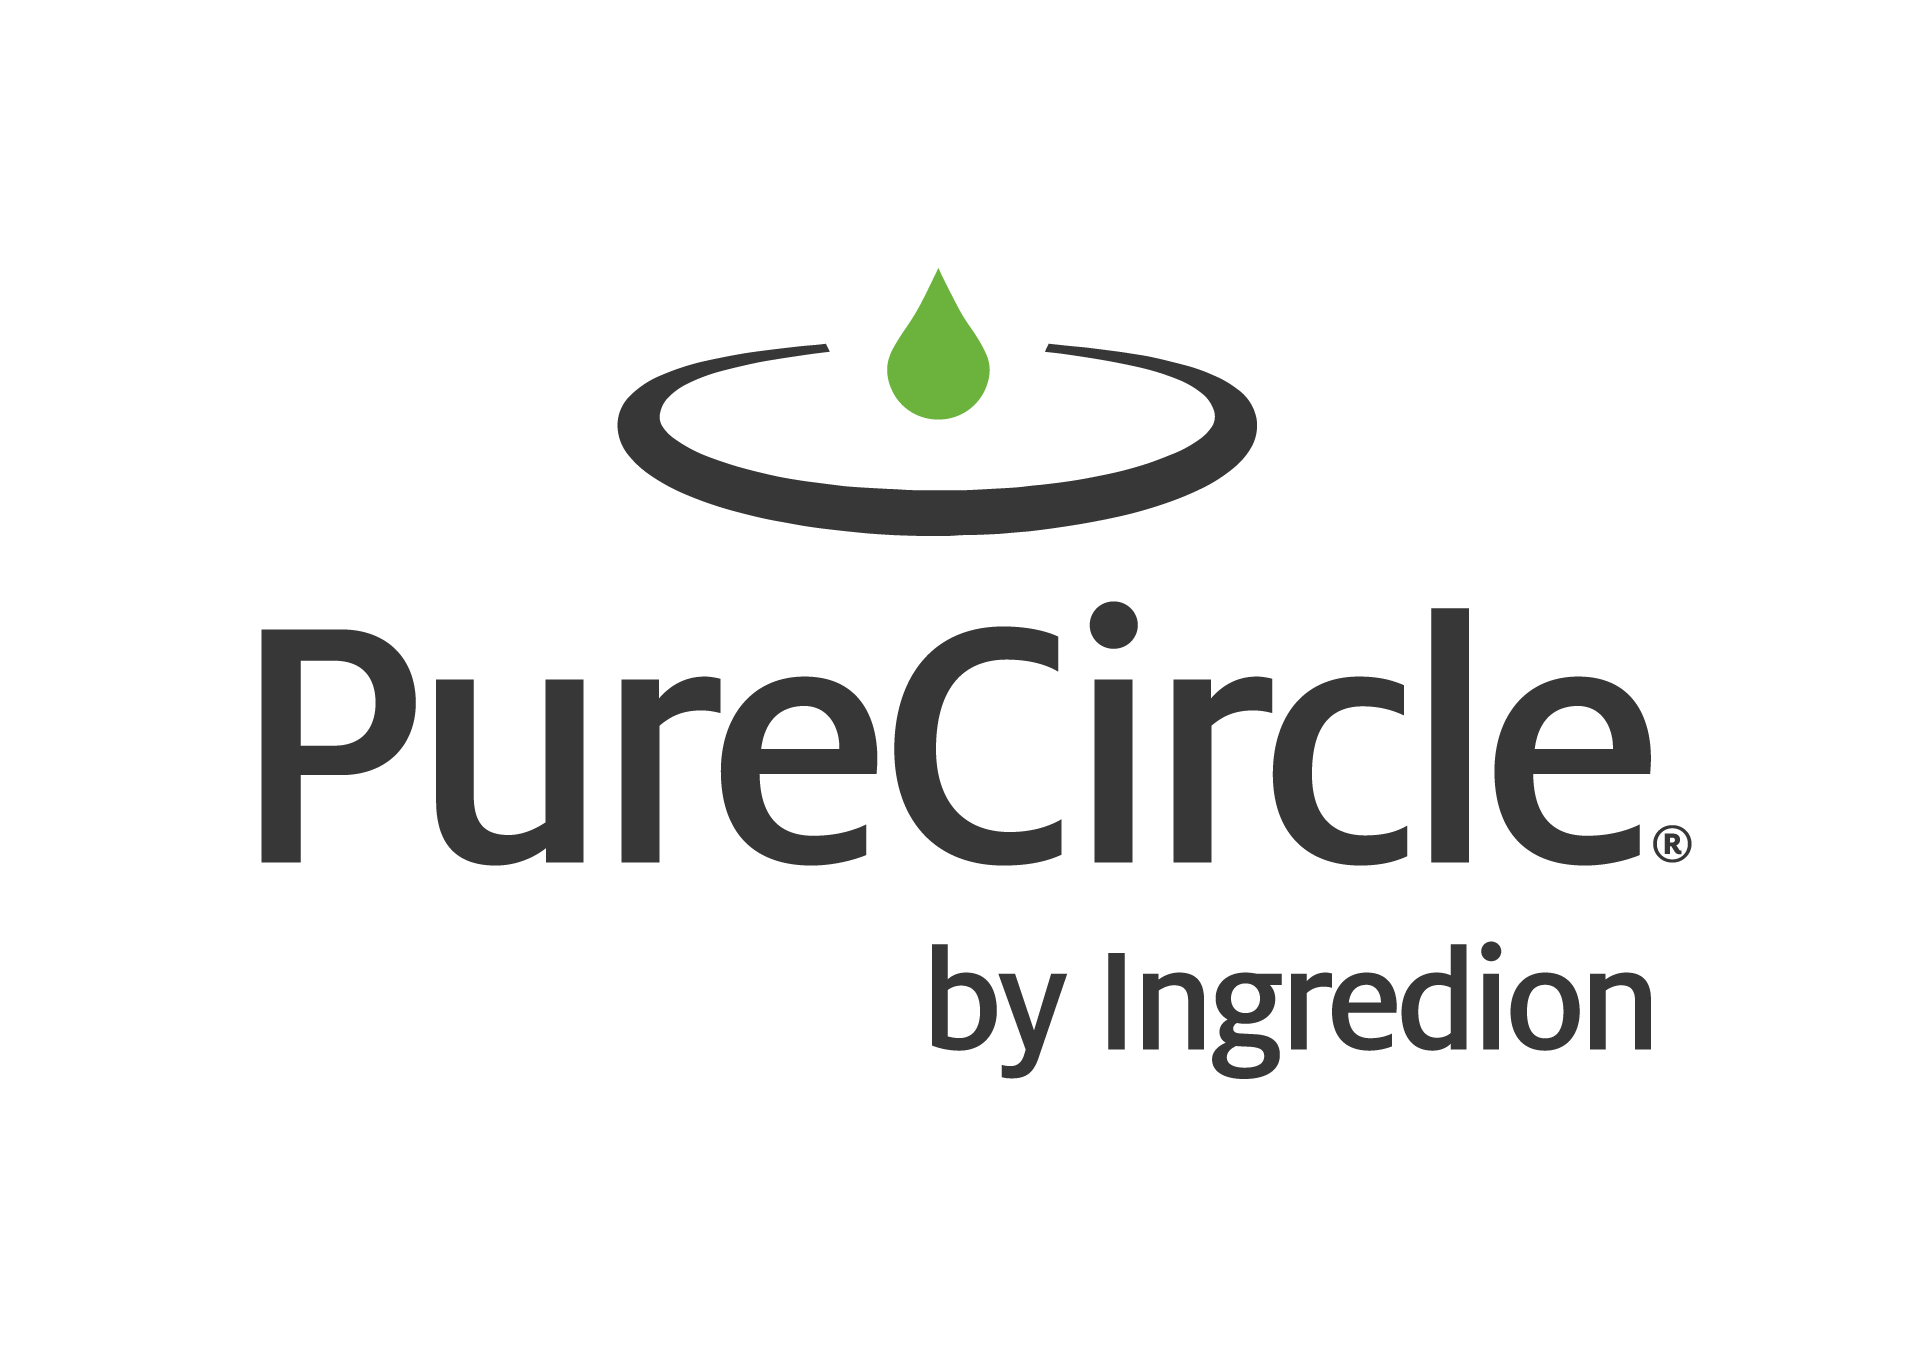 About PureCircle Stevia Institute